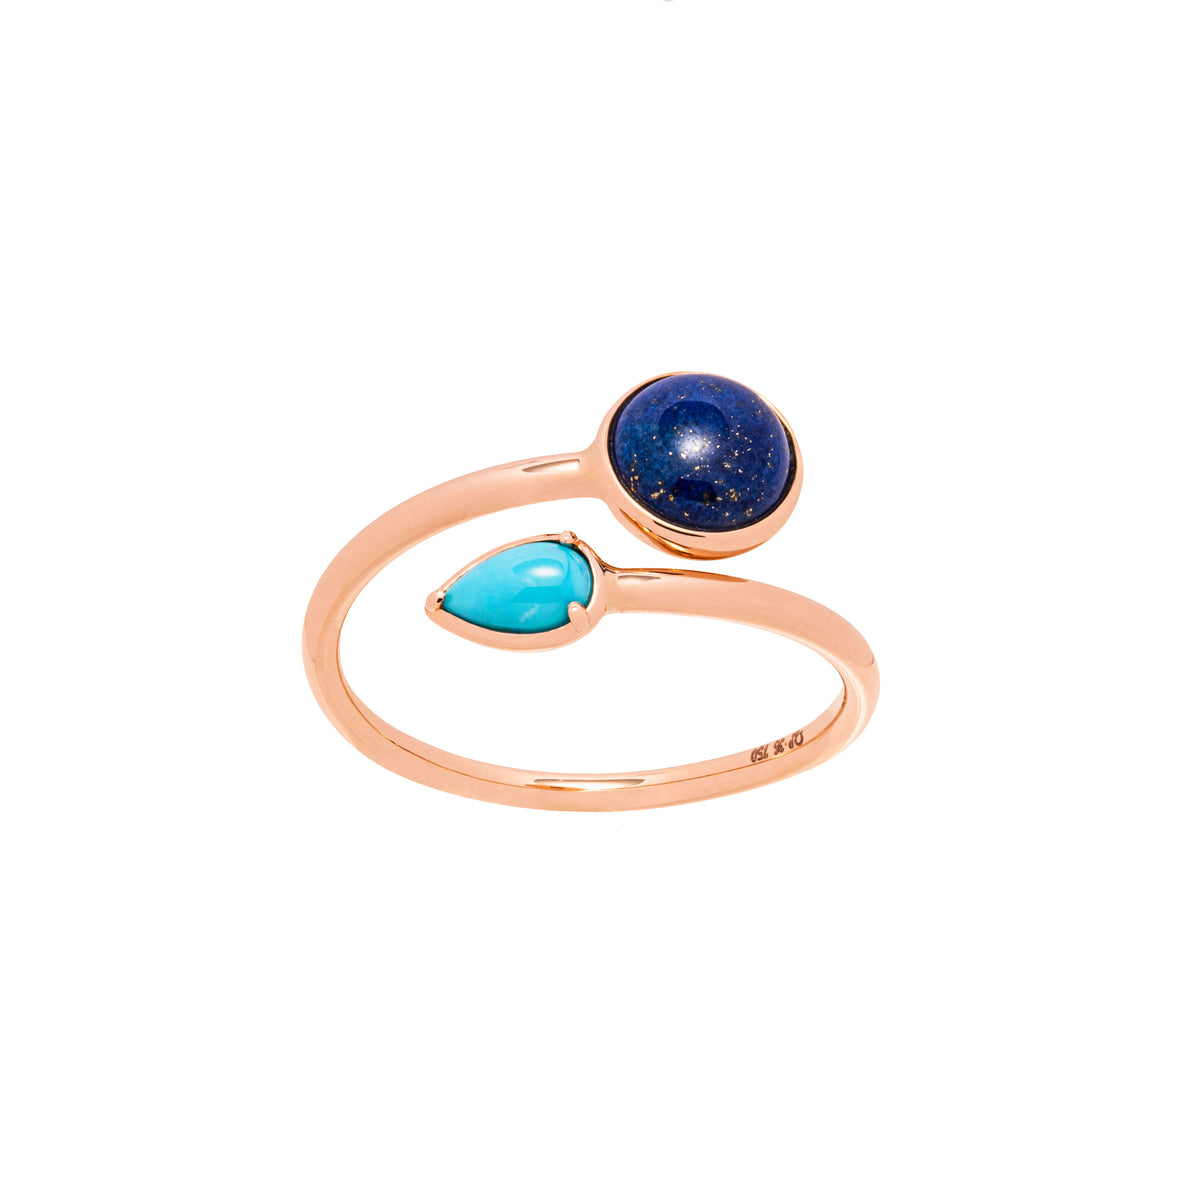 Lapis Ring, Turquoise ring. Blue stone ring